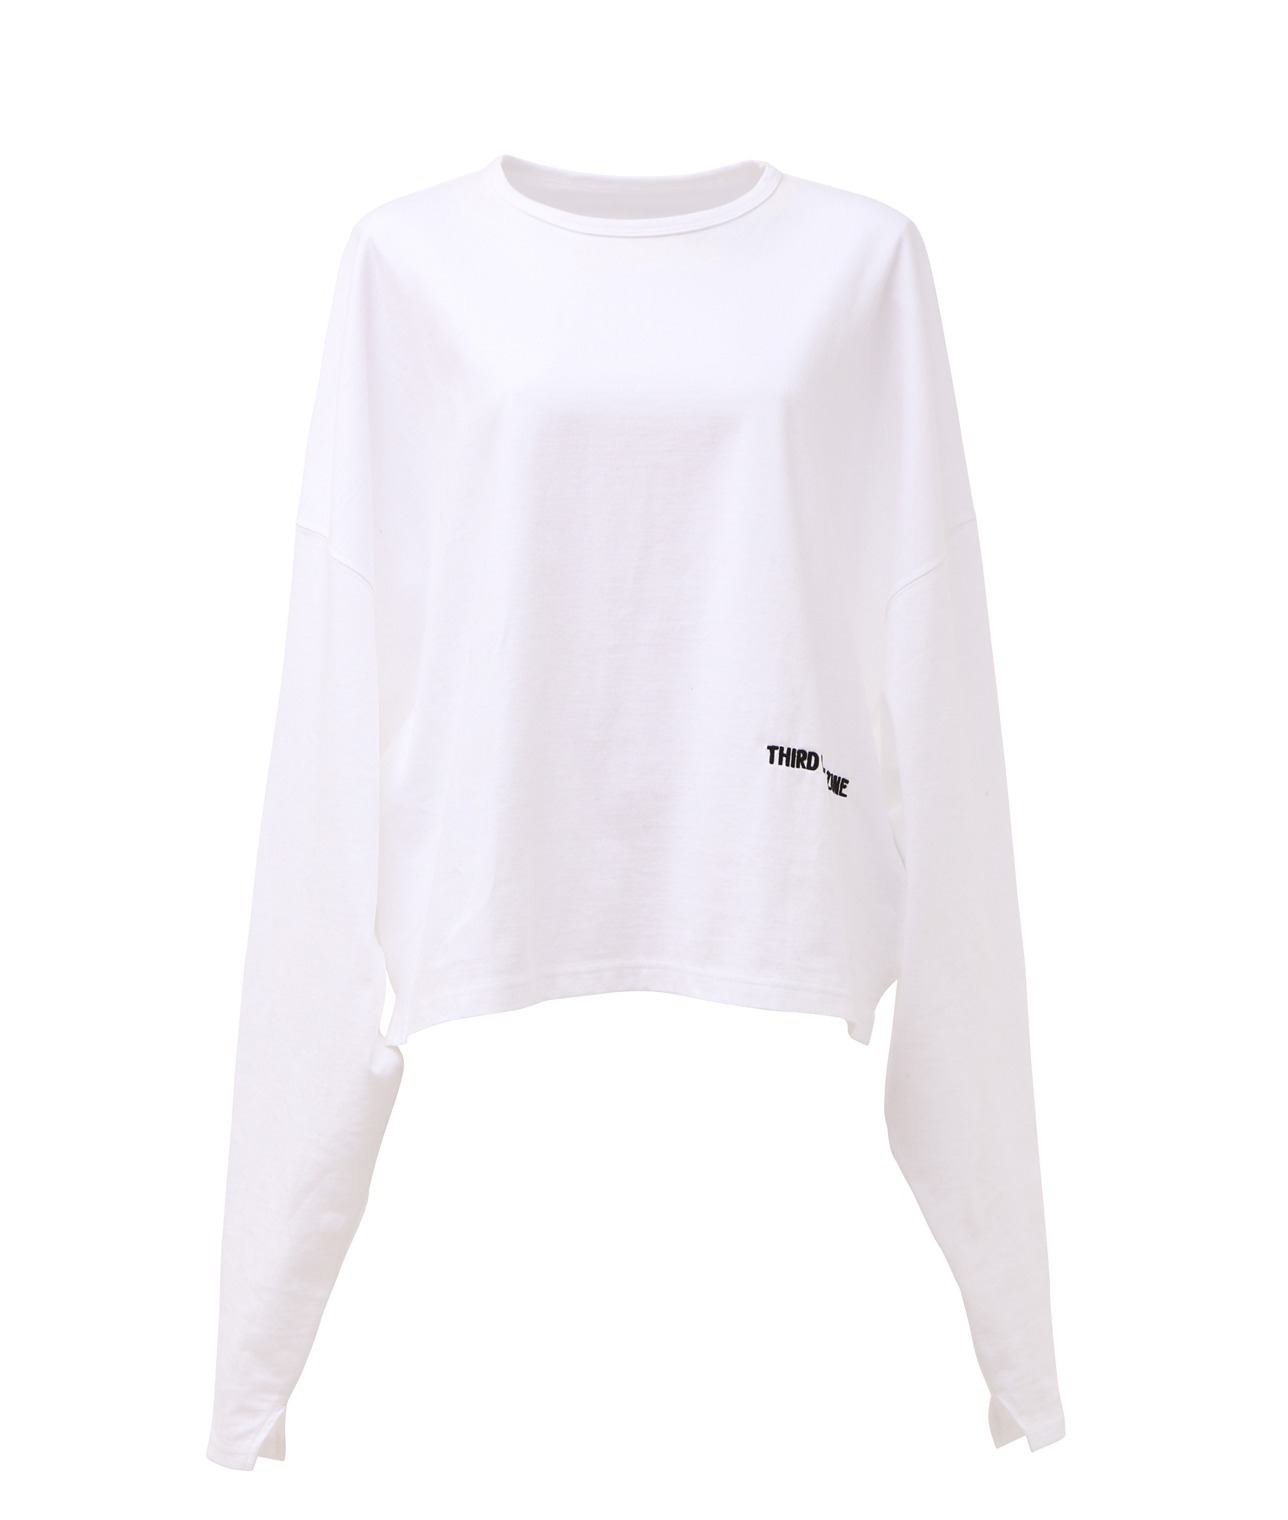 【コラボ】THIRD MAGAZINE×mikomoriロゴ刺繍ロングTシャツ 詳細画像 ホワイト 1